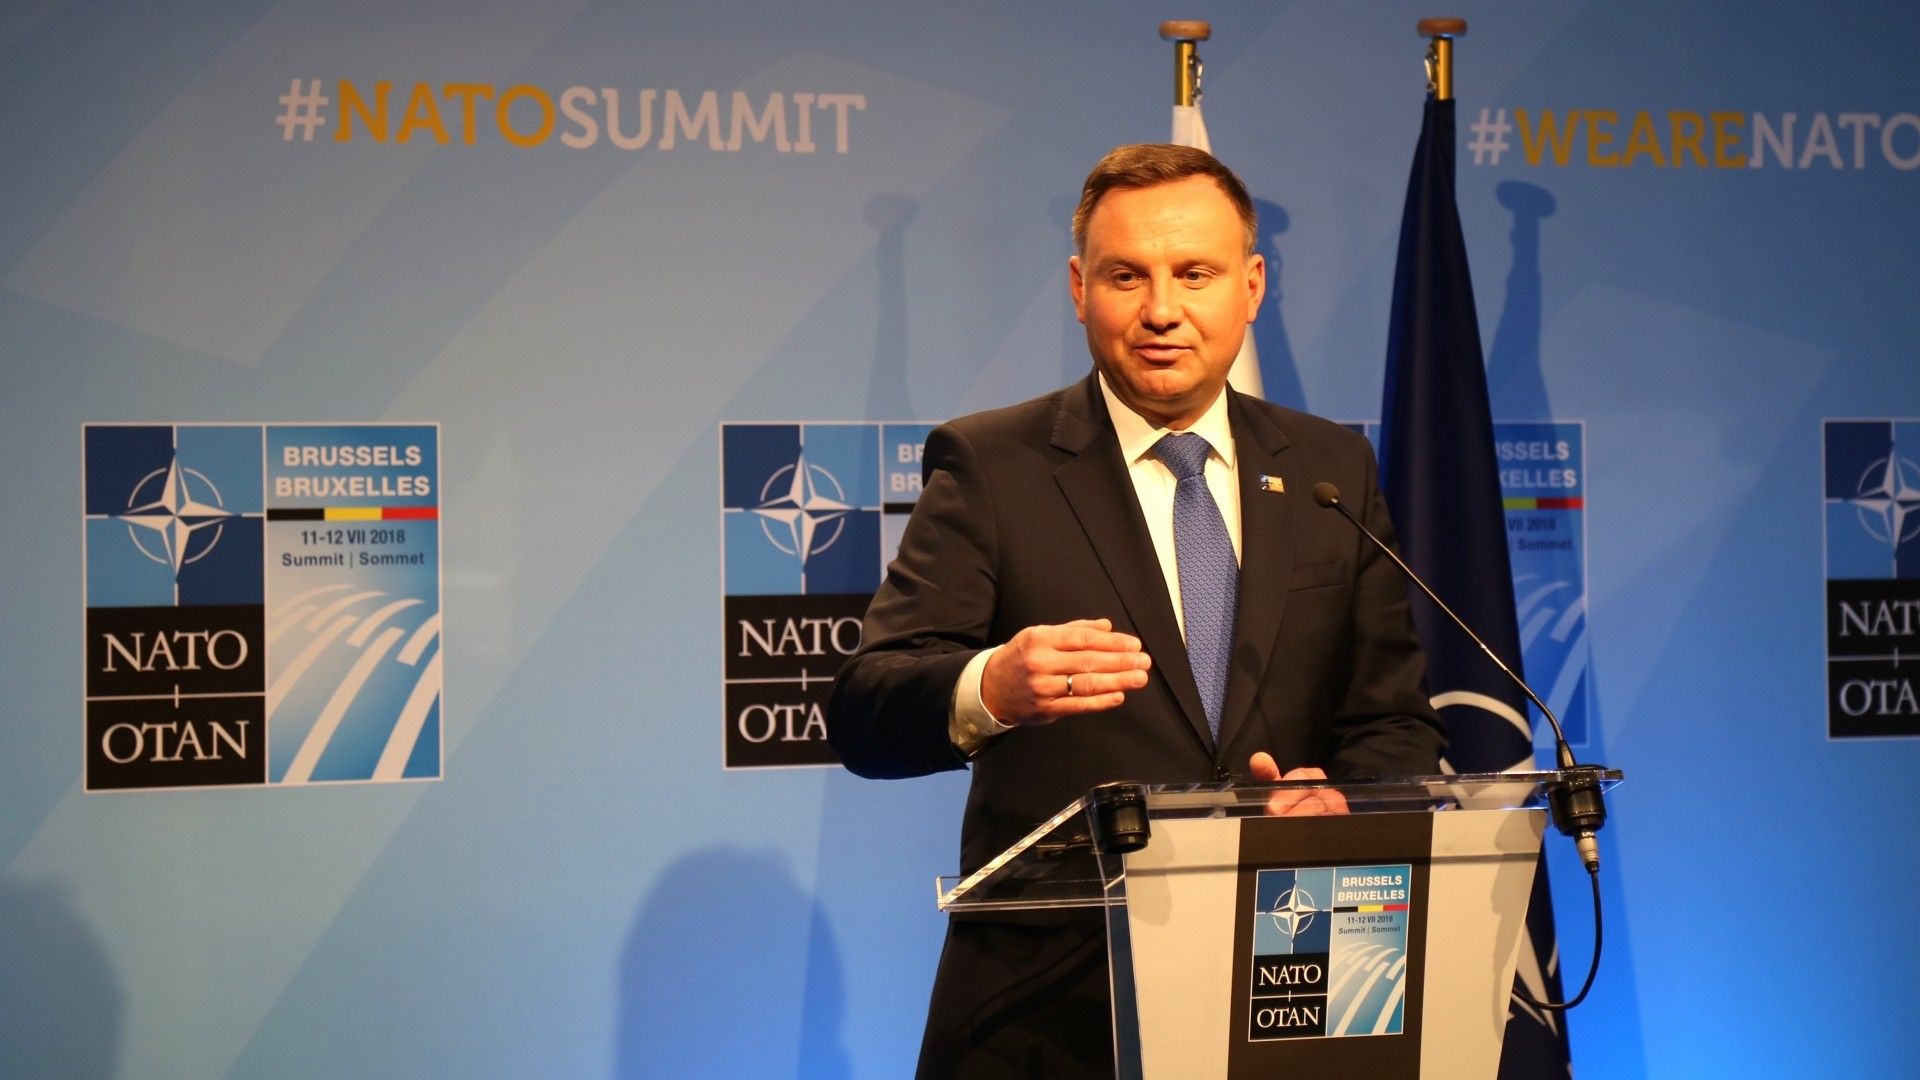 Prezydent Andrzej Duda na szczycie NATO. Fot. Rafał Lesiecki / Defence24.pl